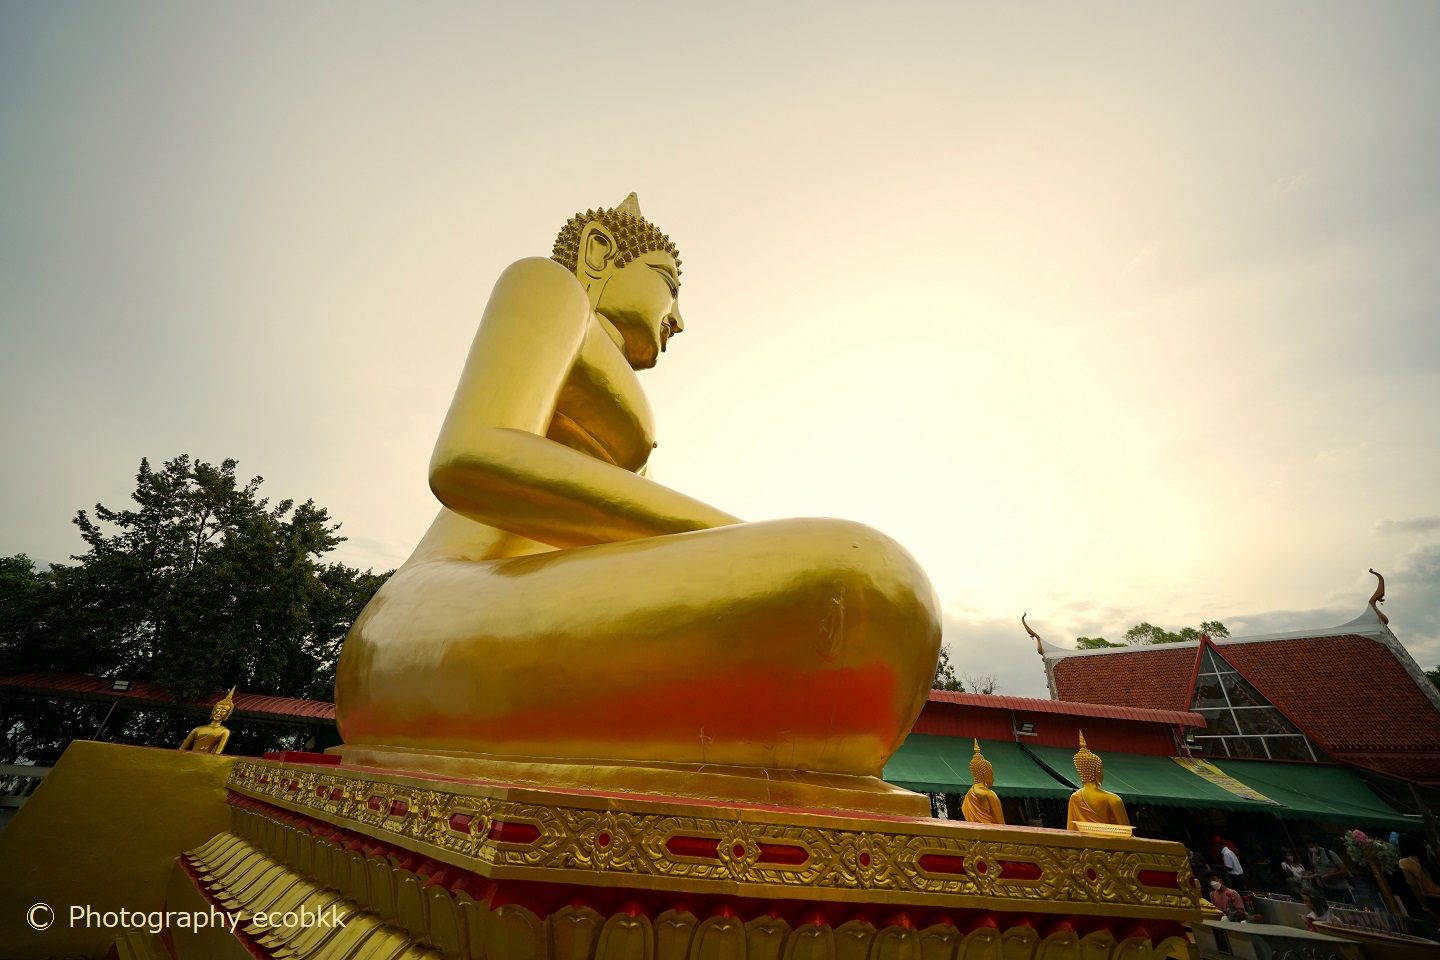 タイ王国チョンブリー県パタヤにある寺院「ワット・プラヤイ・パタヤ」にある大きな仏像「ビッグブッダ」